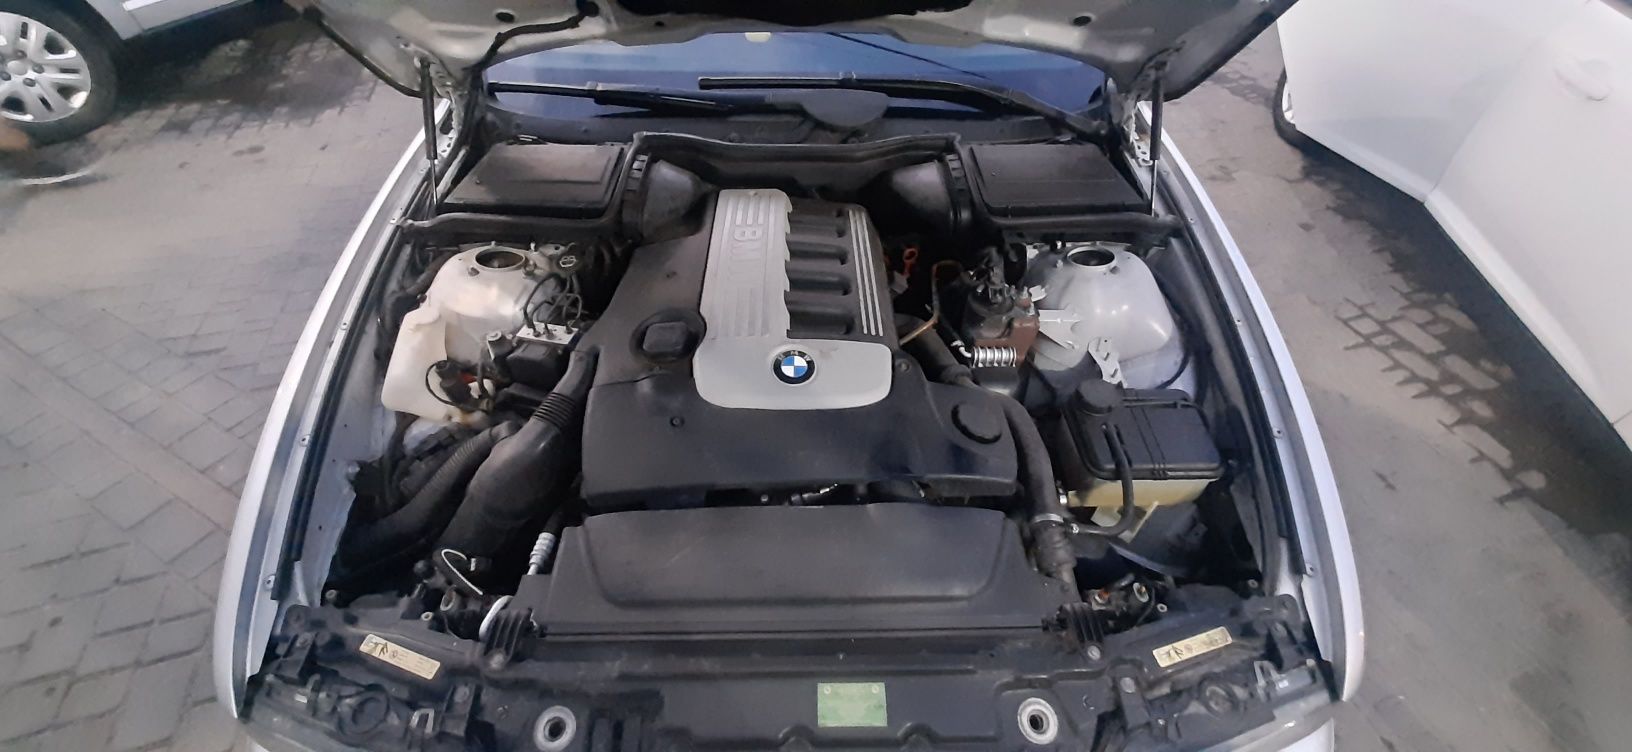 Продам BMW e39 , по кузову есть нюанси, все подробности по телефону 09